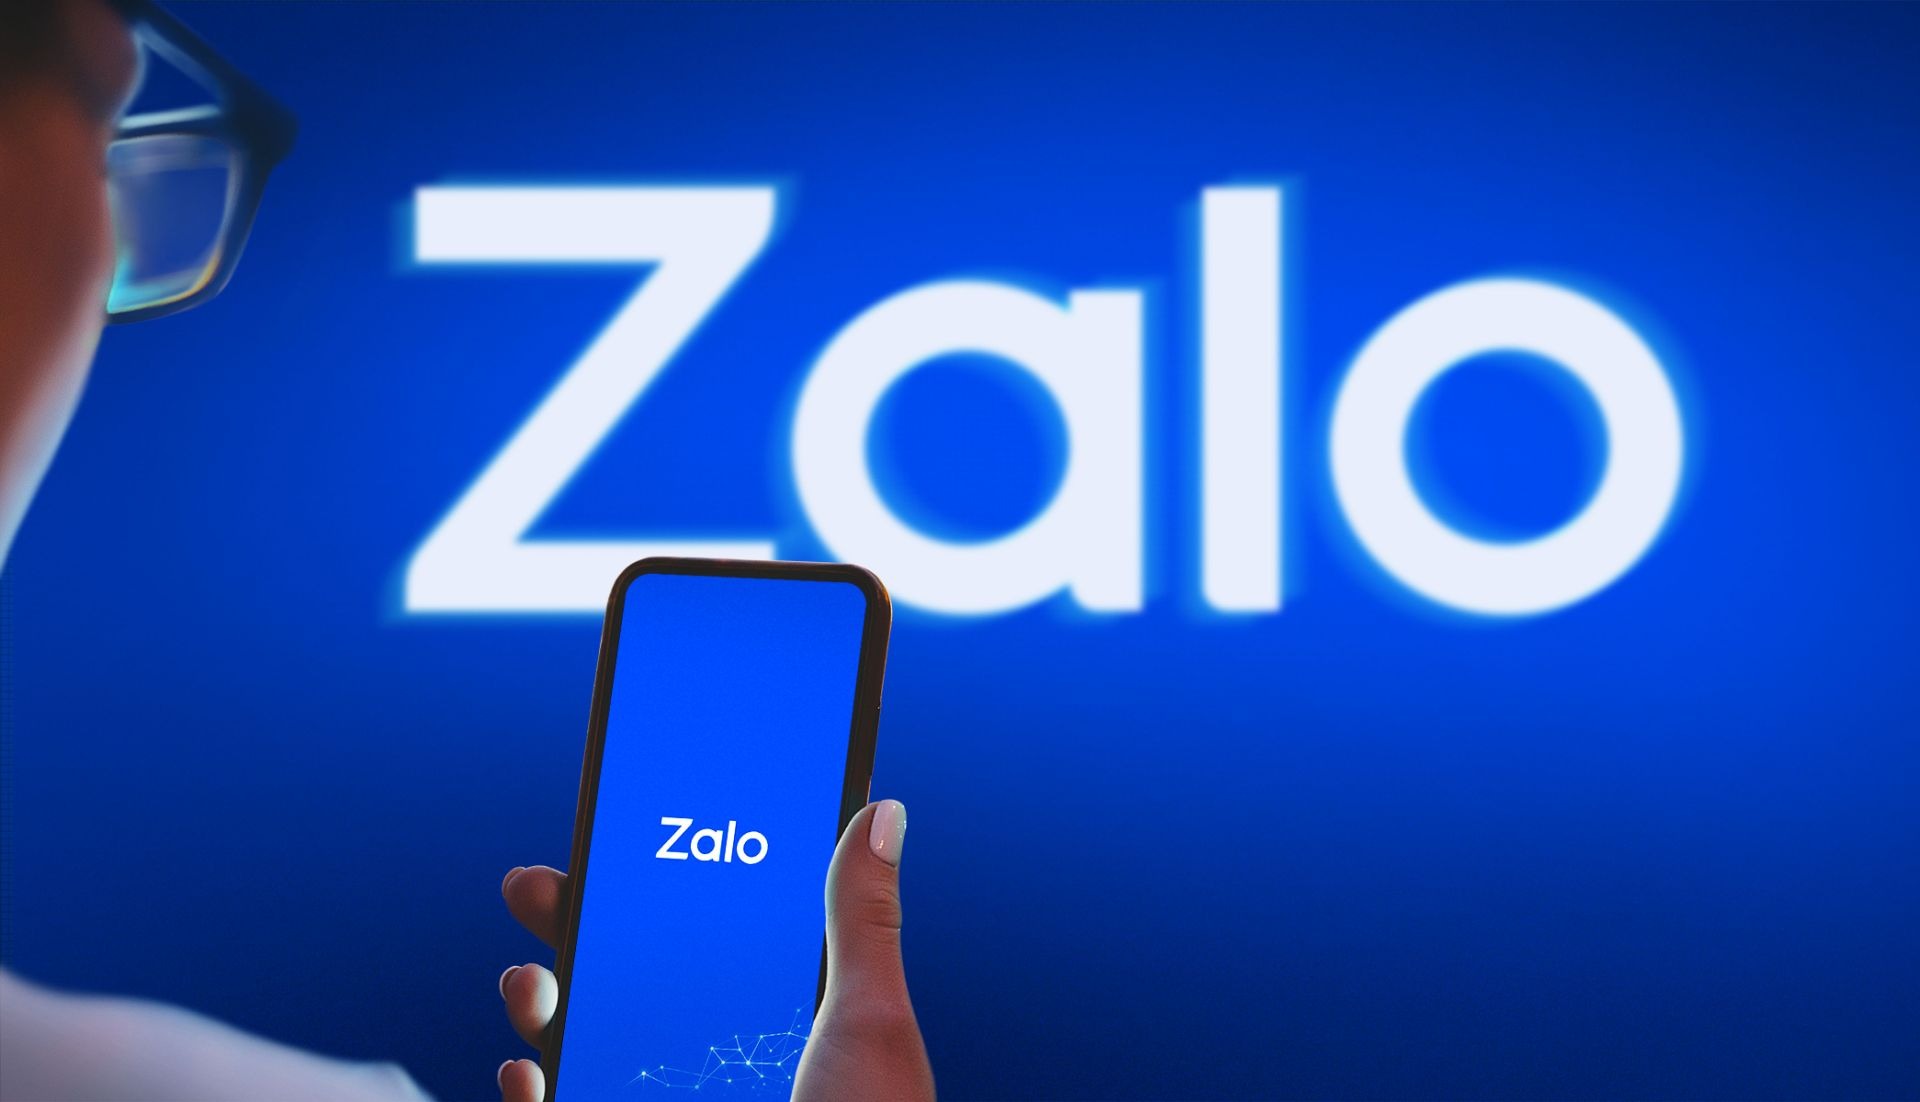 Hướng dẫn cách đổi font chữ trong Zalo trên iPhone